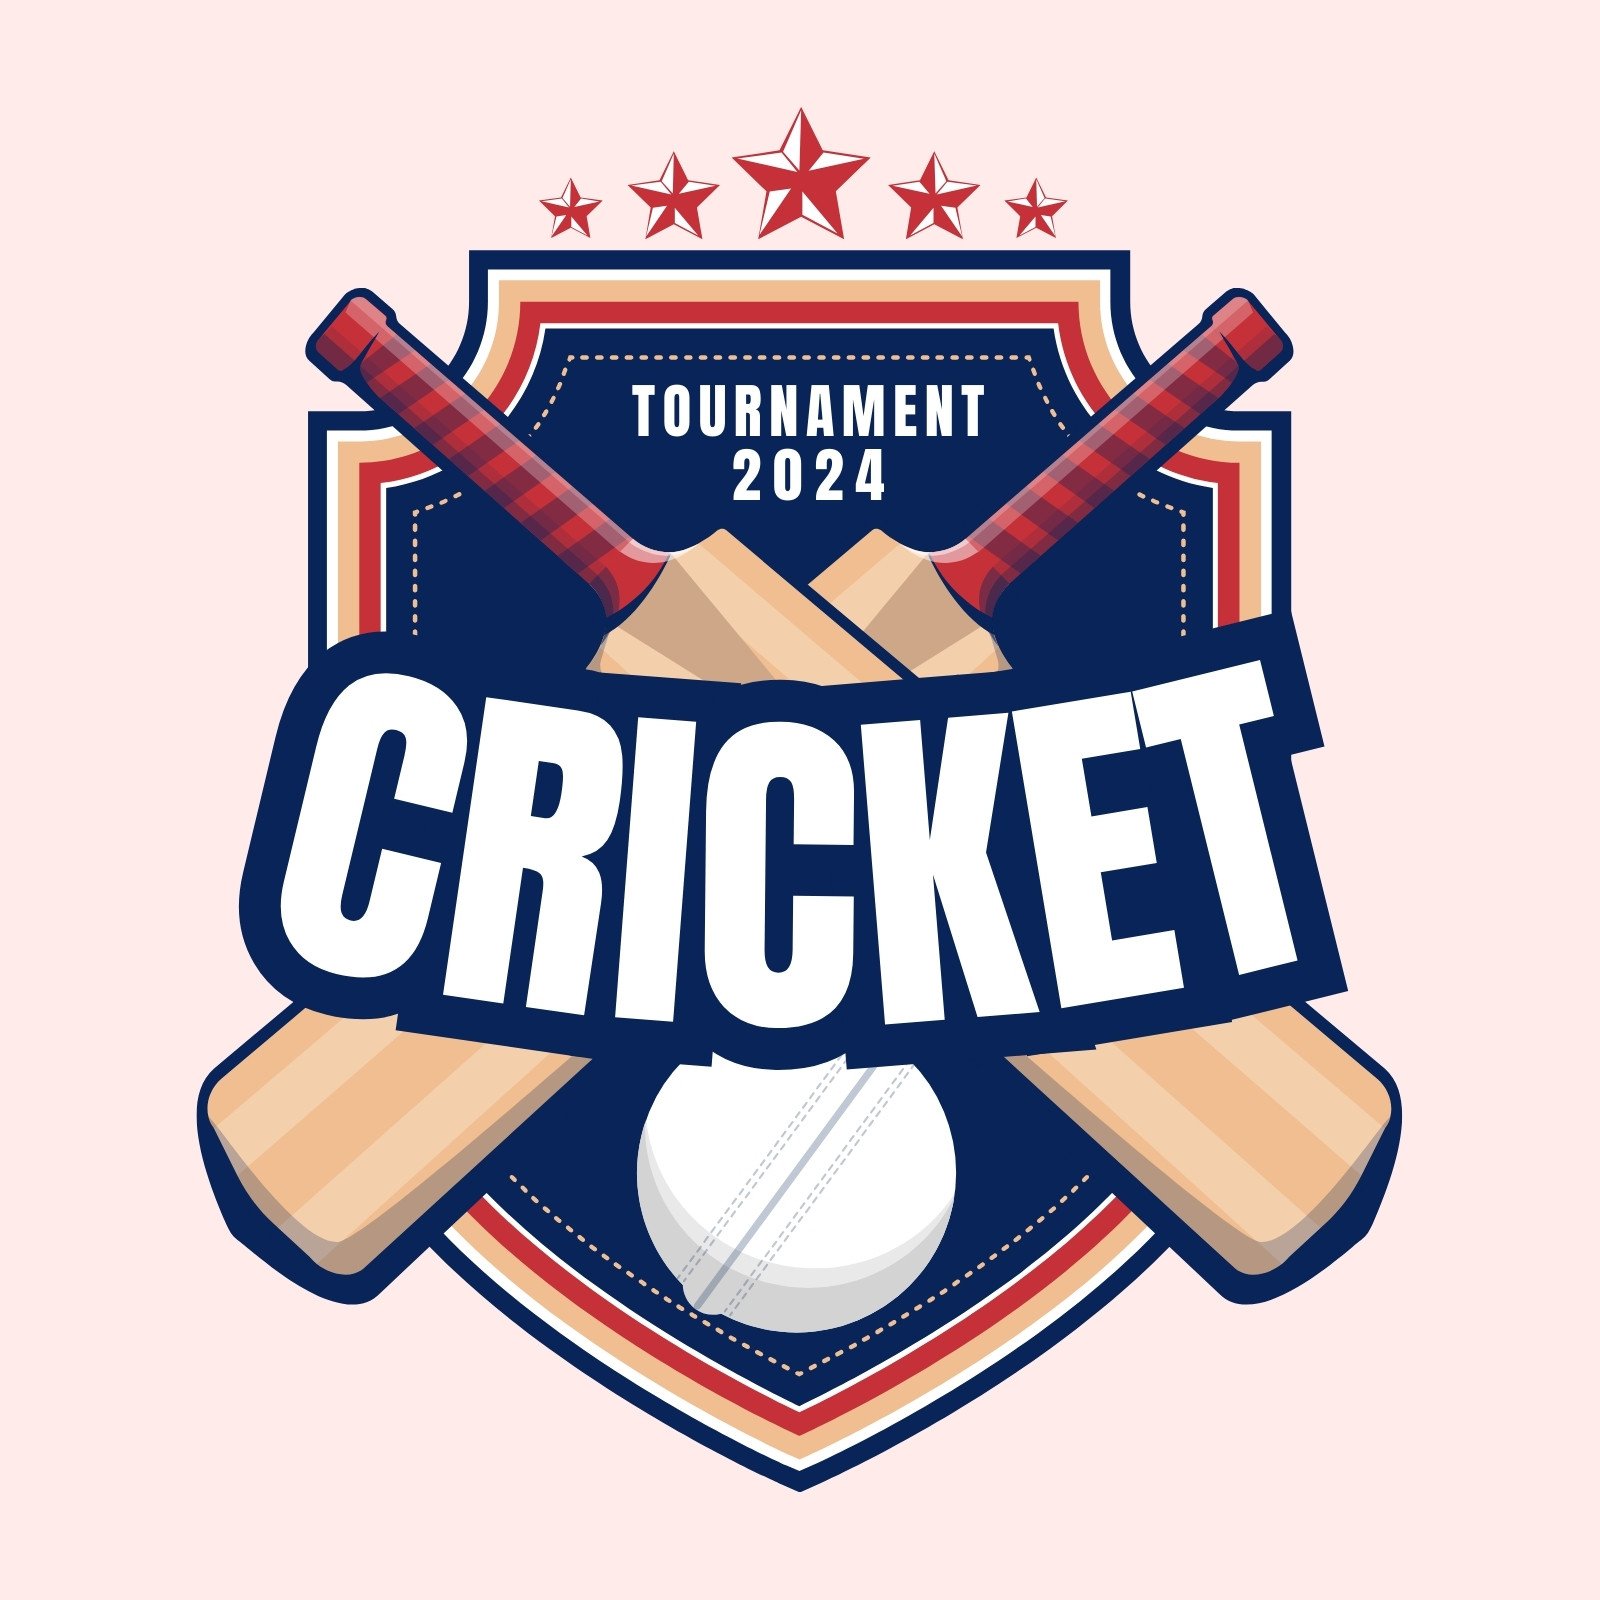 Cricket logo HD wallpaper | Pxfuel